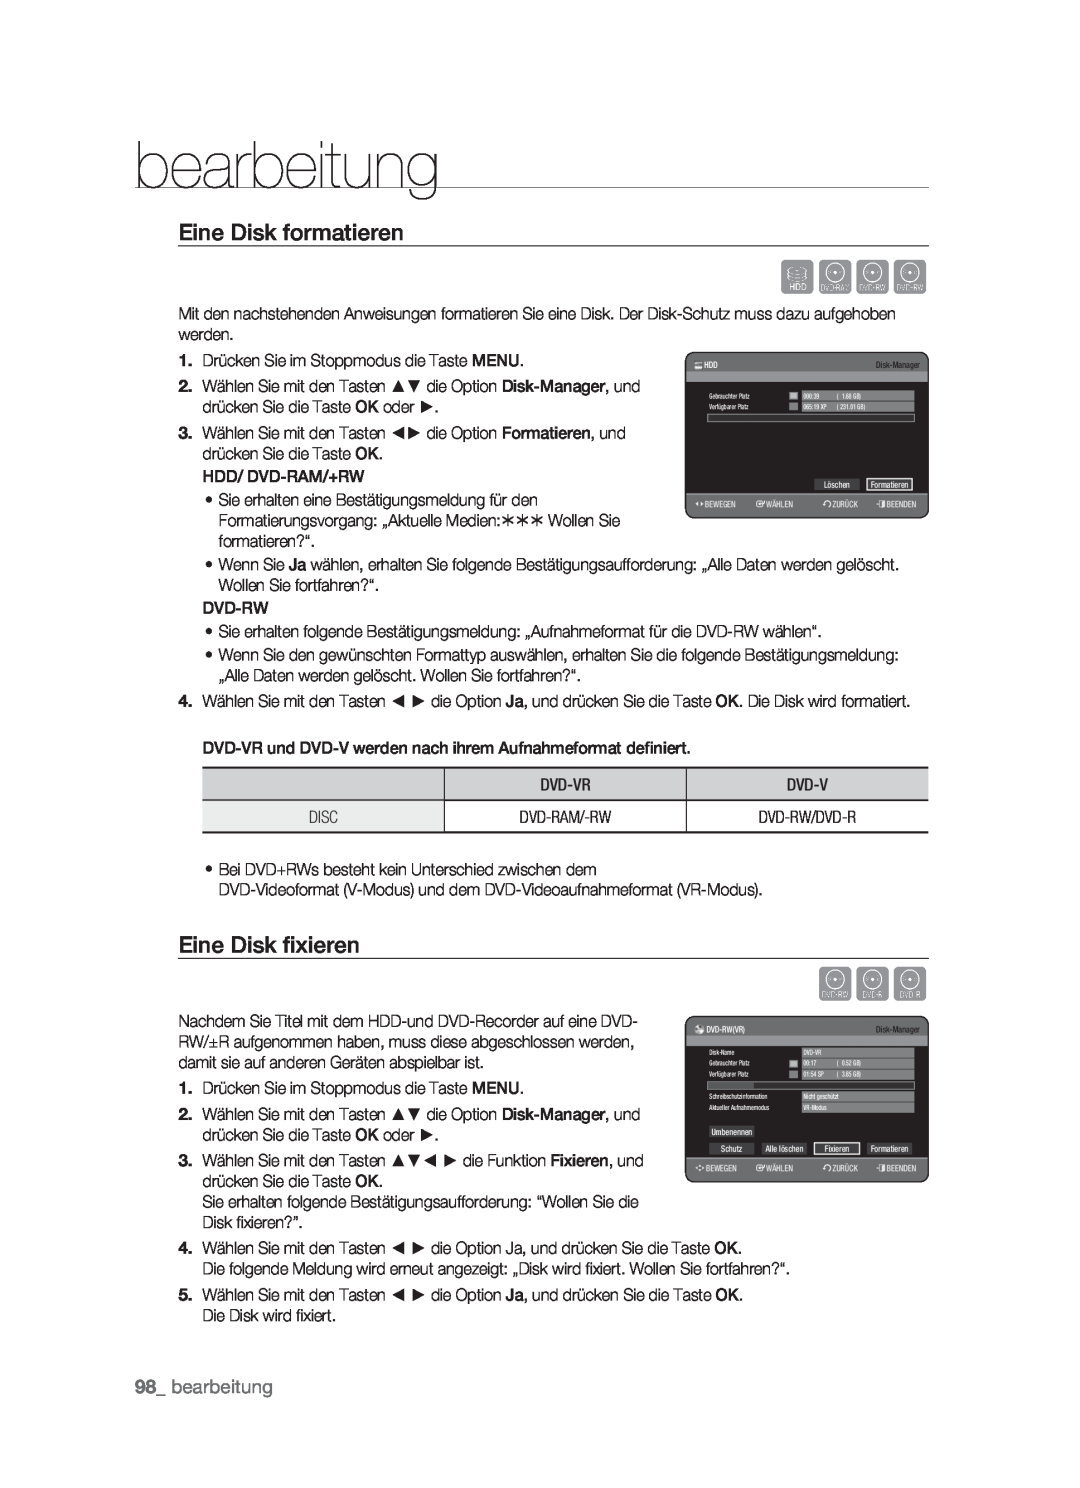 Samsung DVD-HR773/XEG, DVD-HR773/XEN, DVD-HR773/XEB manual Eine Disk formatieren, Eine Disk ﬁxieren, bearbeitung, Sxck 